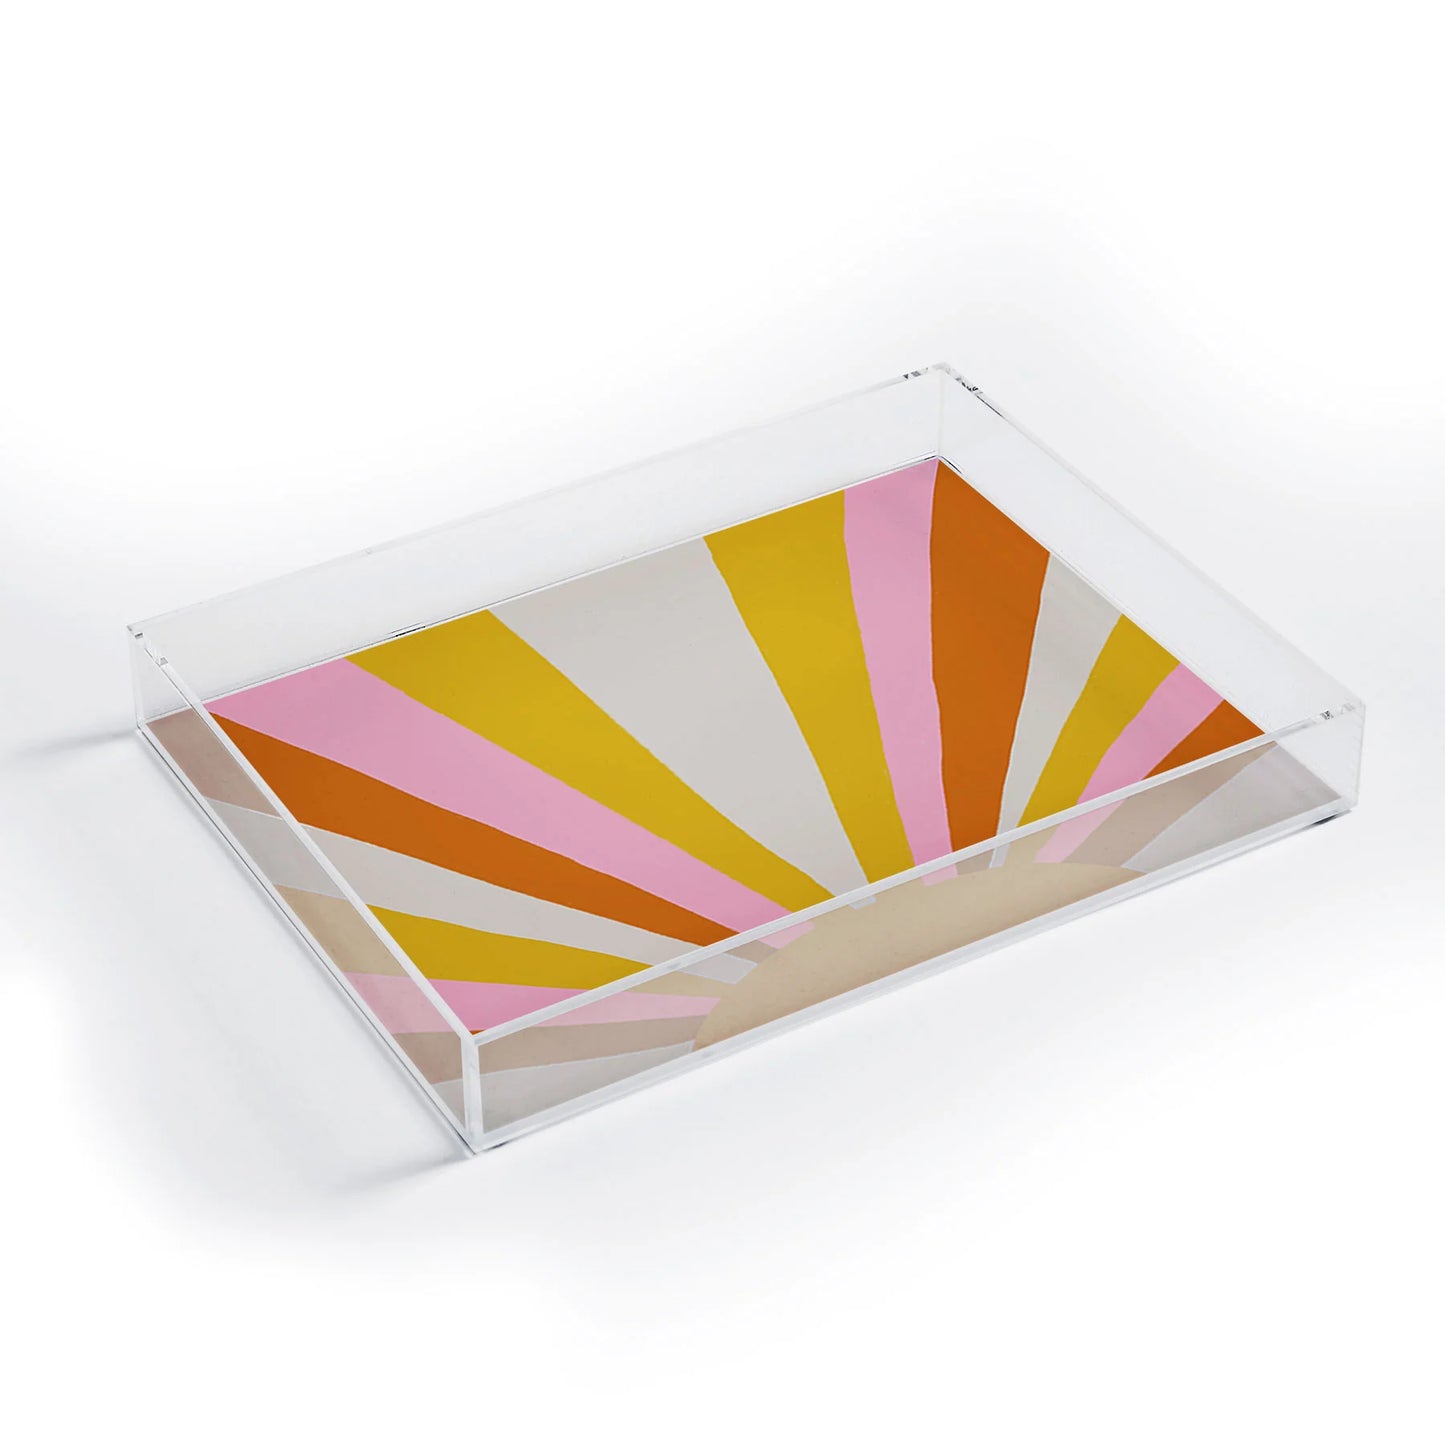 Deny Designs Sunshine Love small acrylic tray 